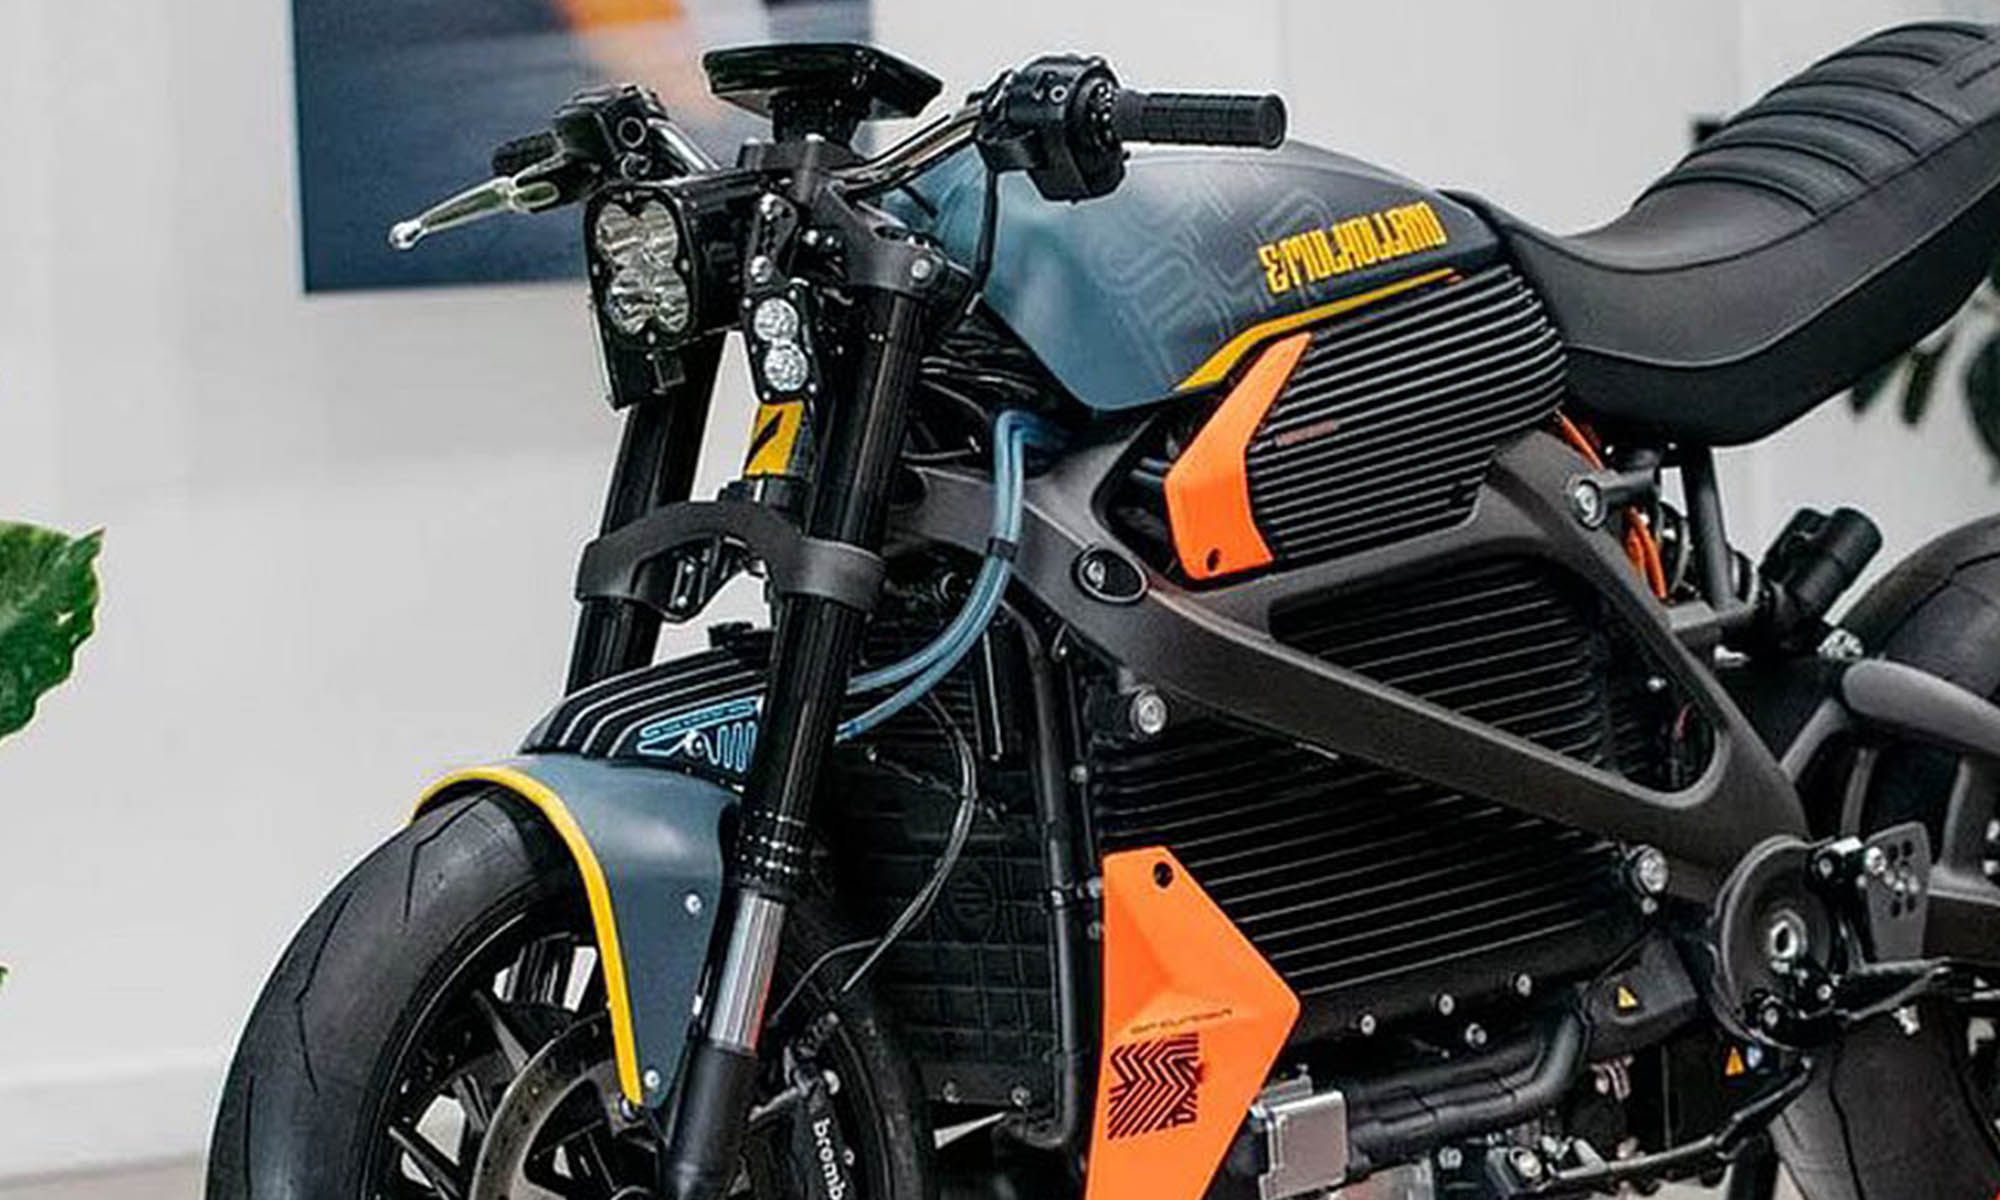 Harley-Davidson preparar una nueva moto eléctrica para la marca LiveWire basada en la plataforma Arrow.